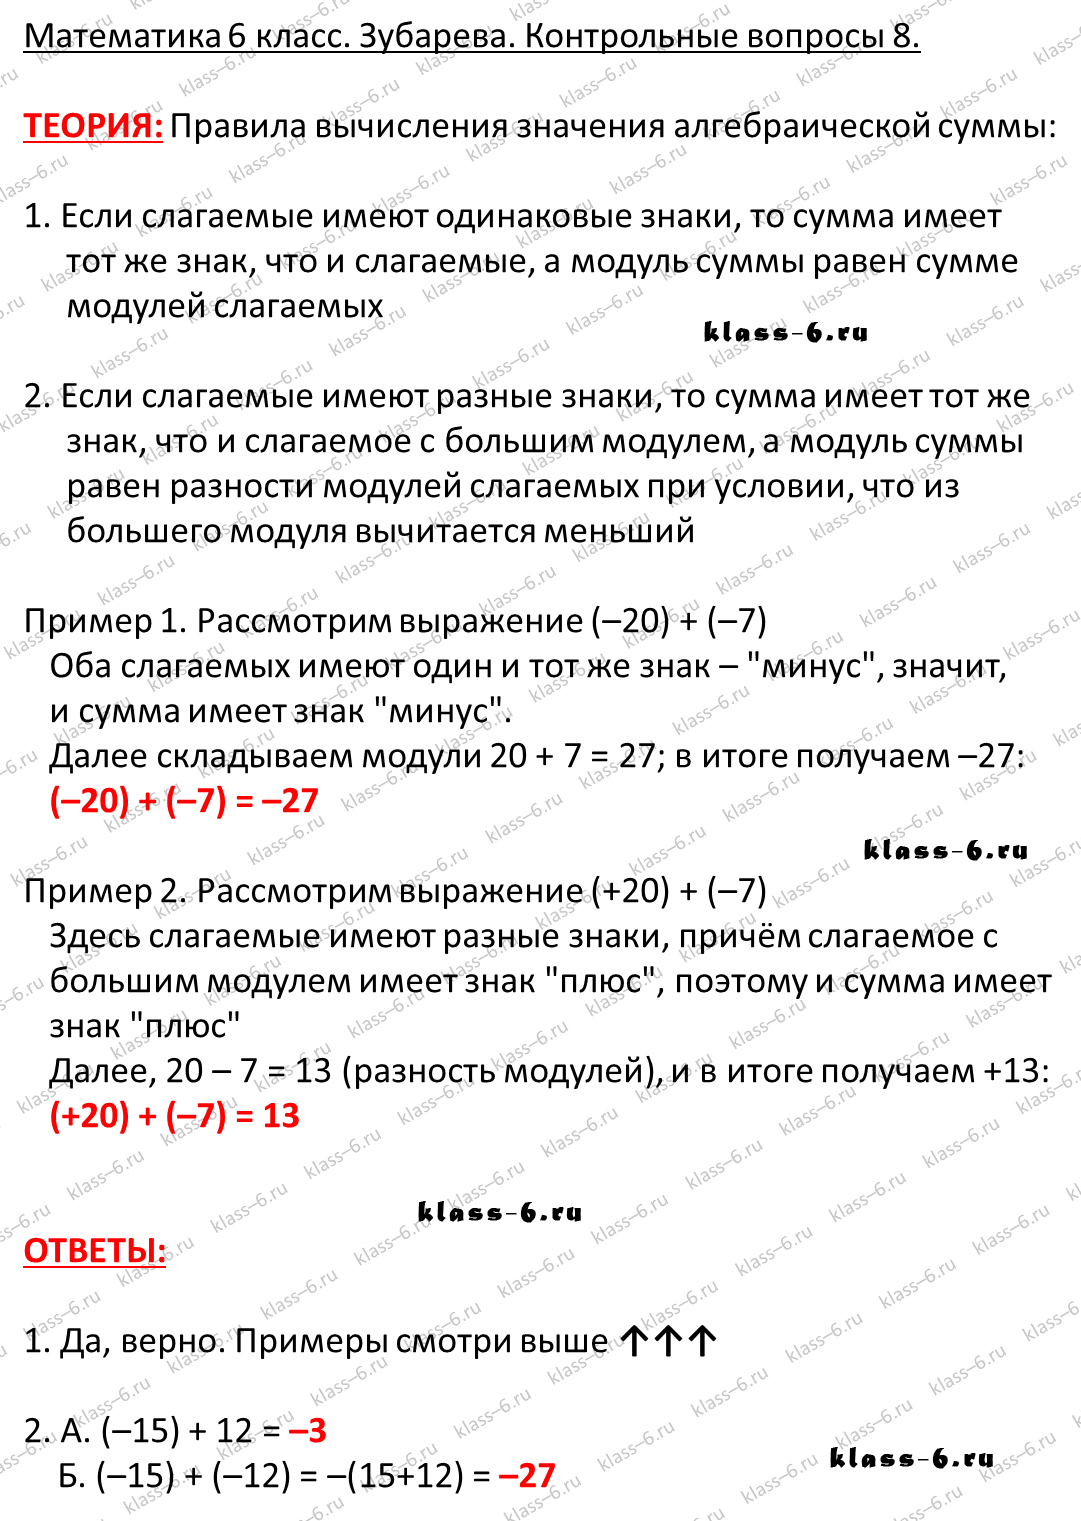 Контрольные вопросы и задания русский язык 6класс про существ